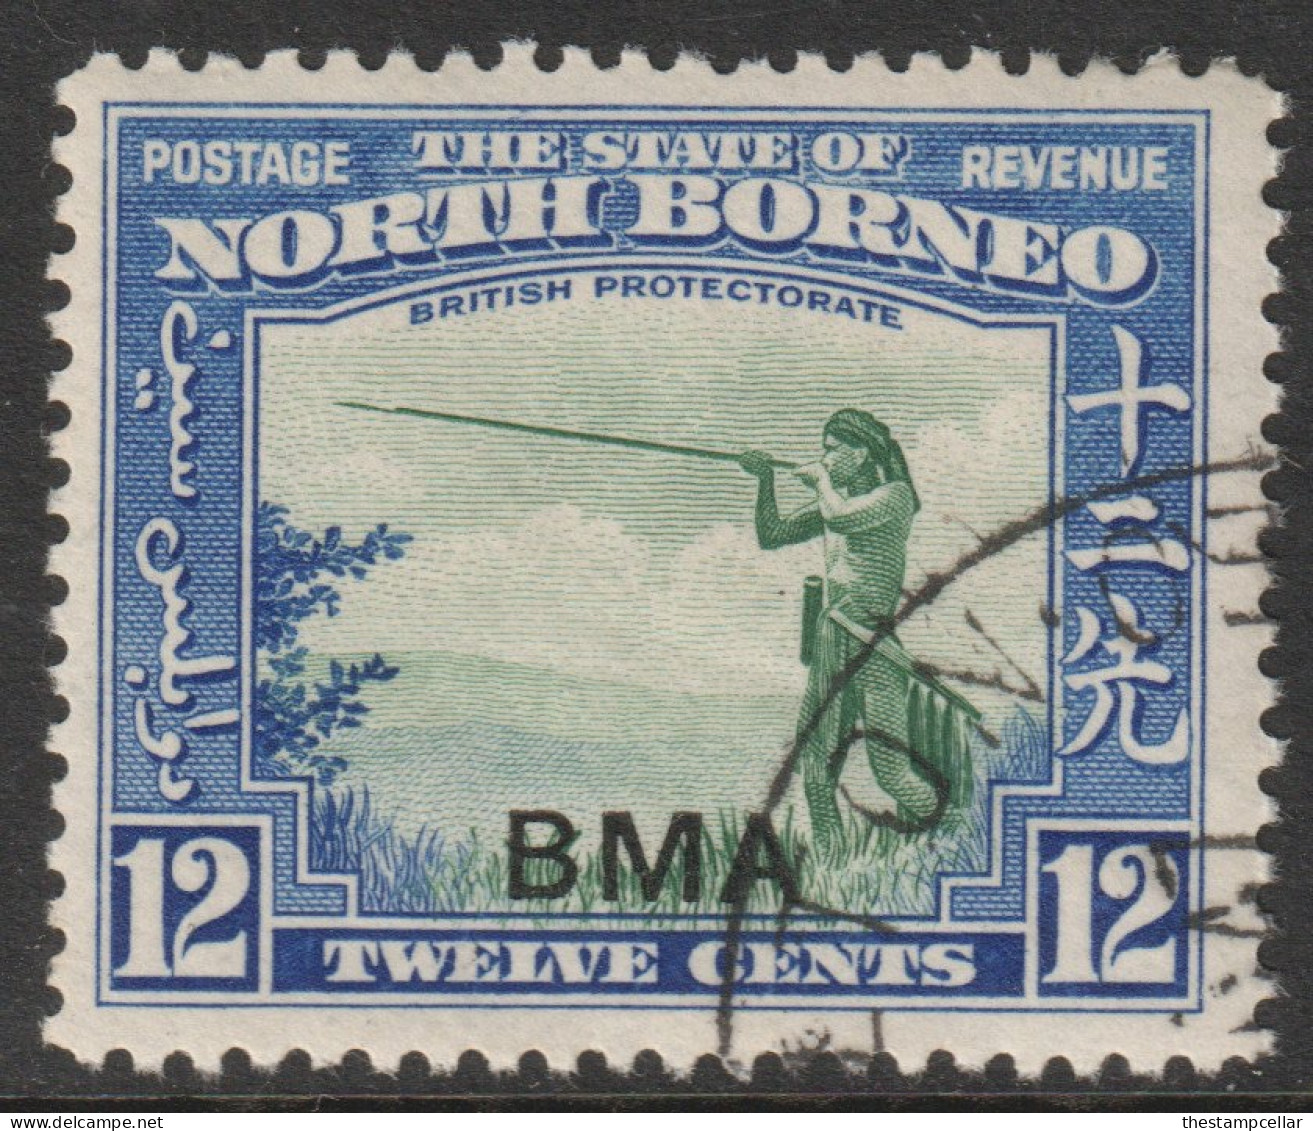 North Borneo Scott 215 - SG327, 1945 BMA 12c Used - Nordborneo (...-1963)